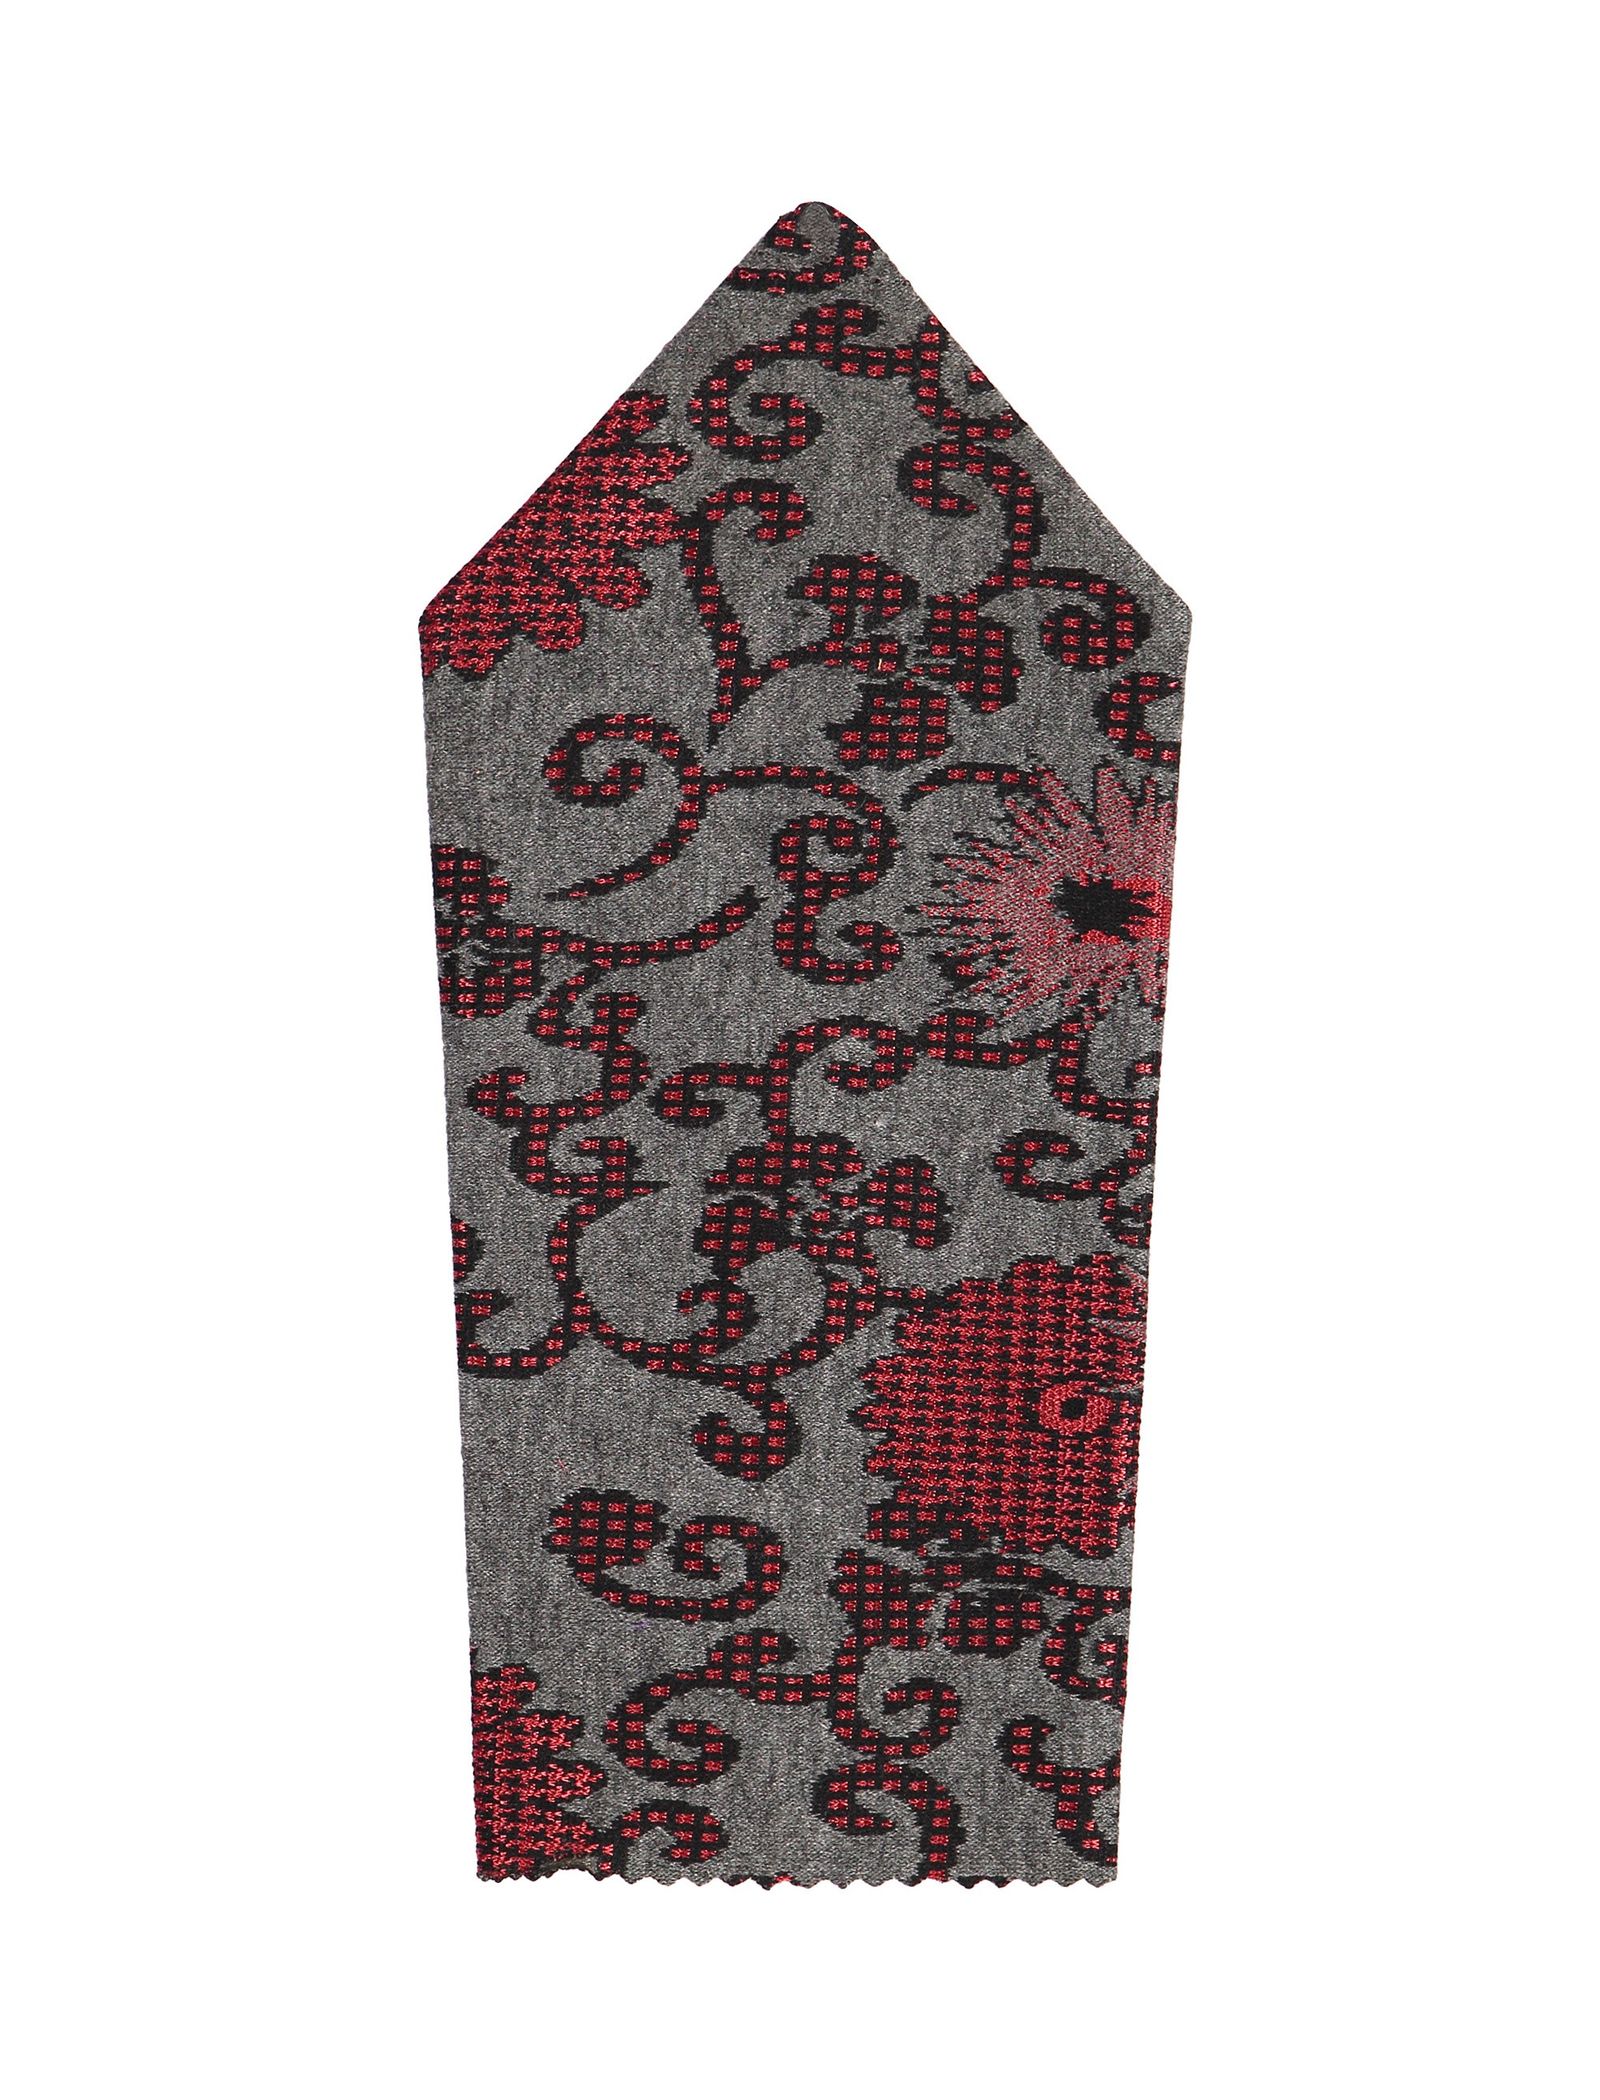 دستمال جیب طرح دار مردانه - خانه مد راد - قرمز و ط.وسي - 2